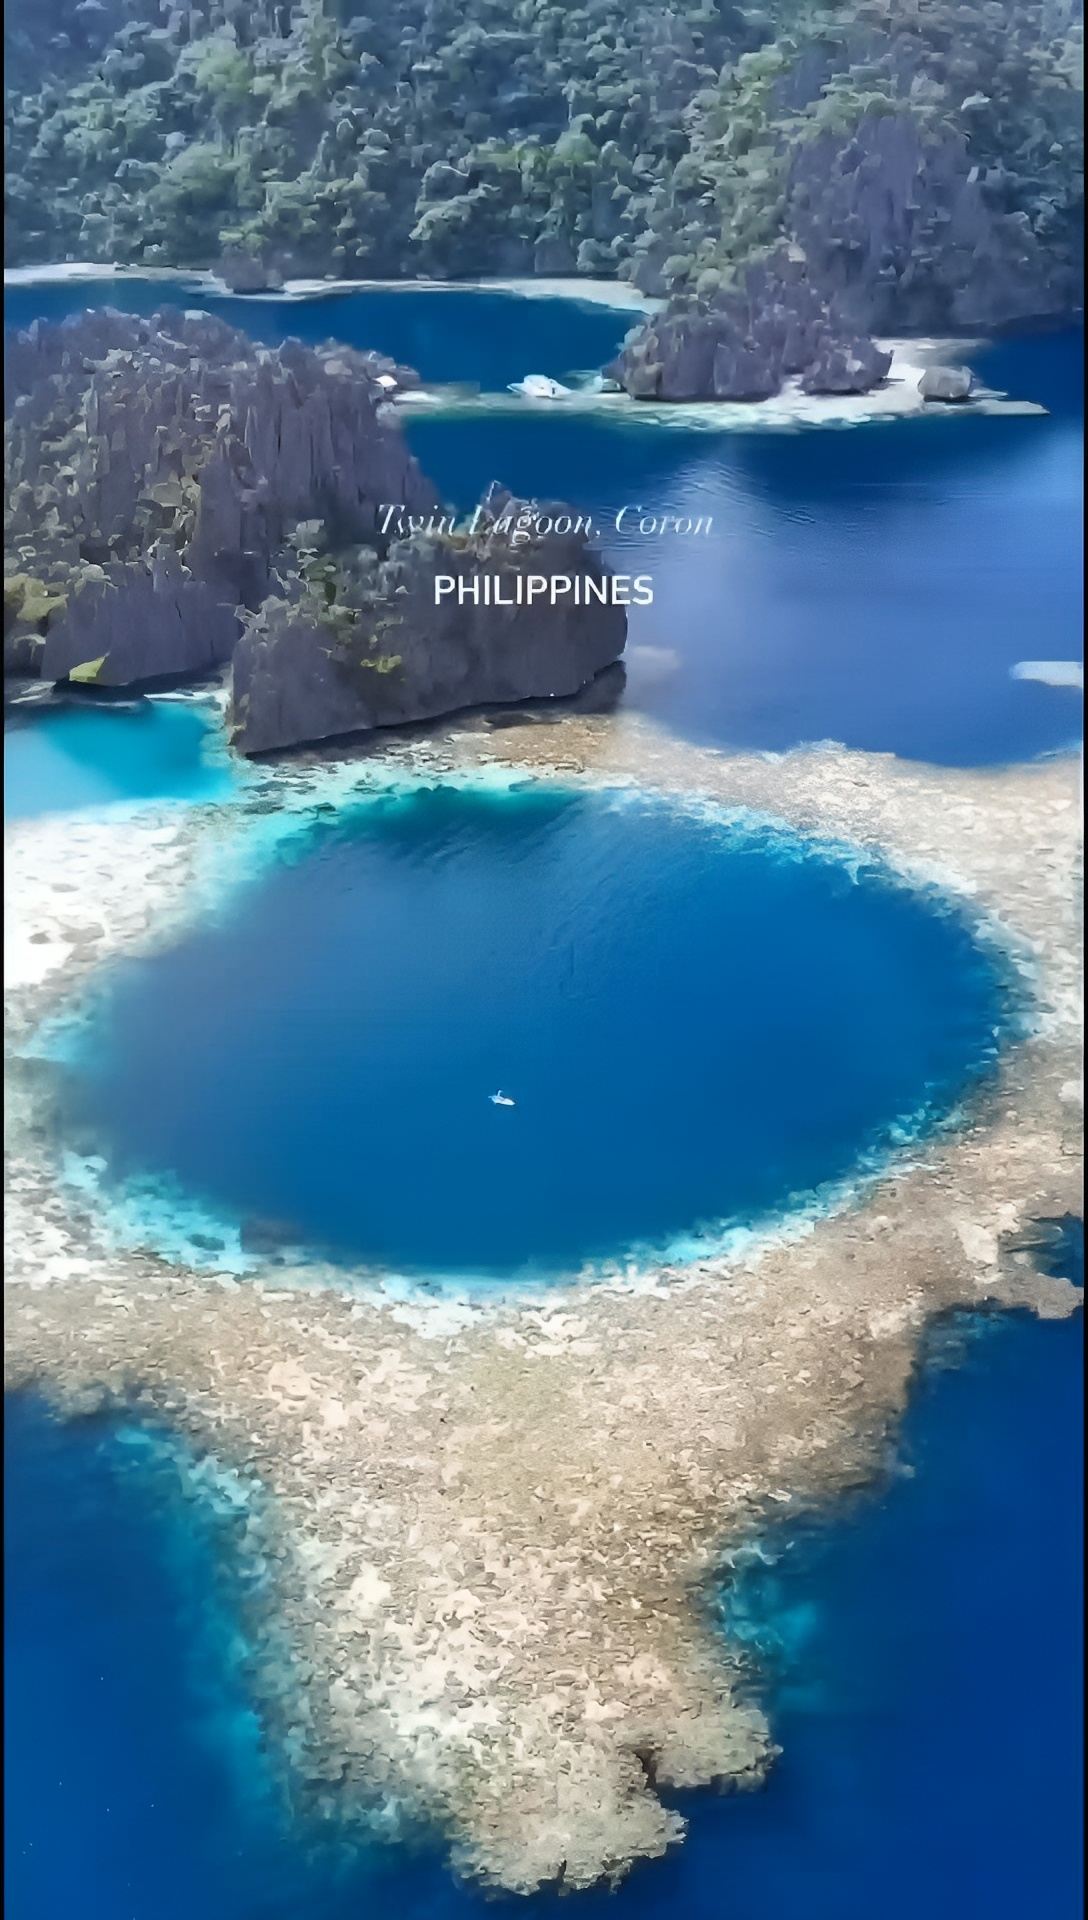 菲律宾旅游海岛推荐，巴拉望岛，与周围数千个海岛保存完好的自然生态，而拥有“海上乌托邦”之称。也是菲律